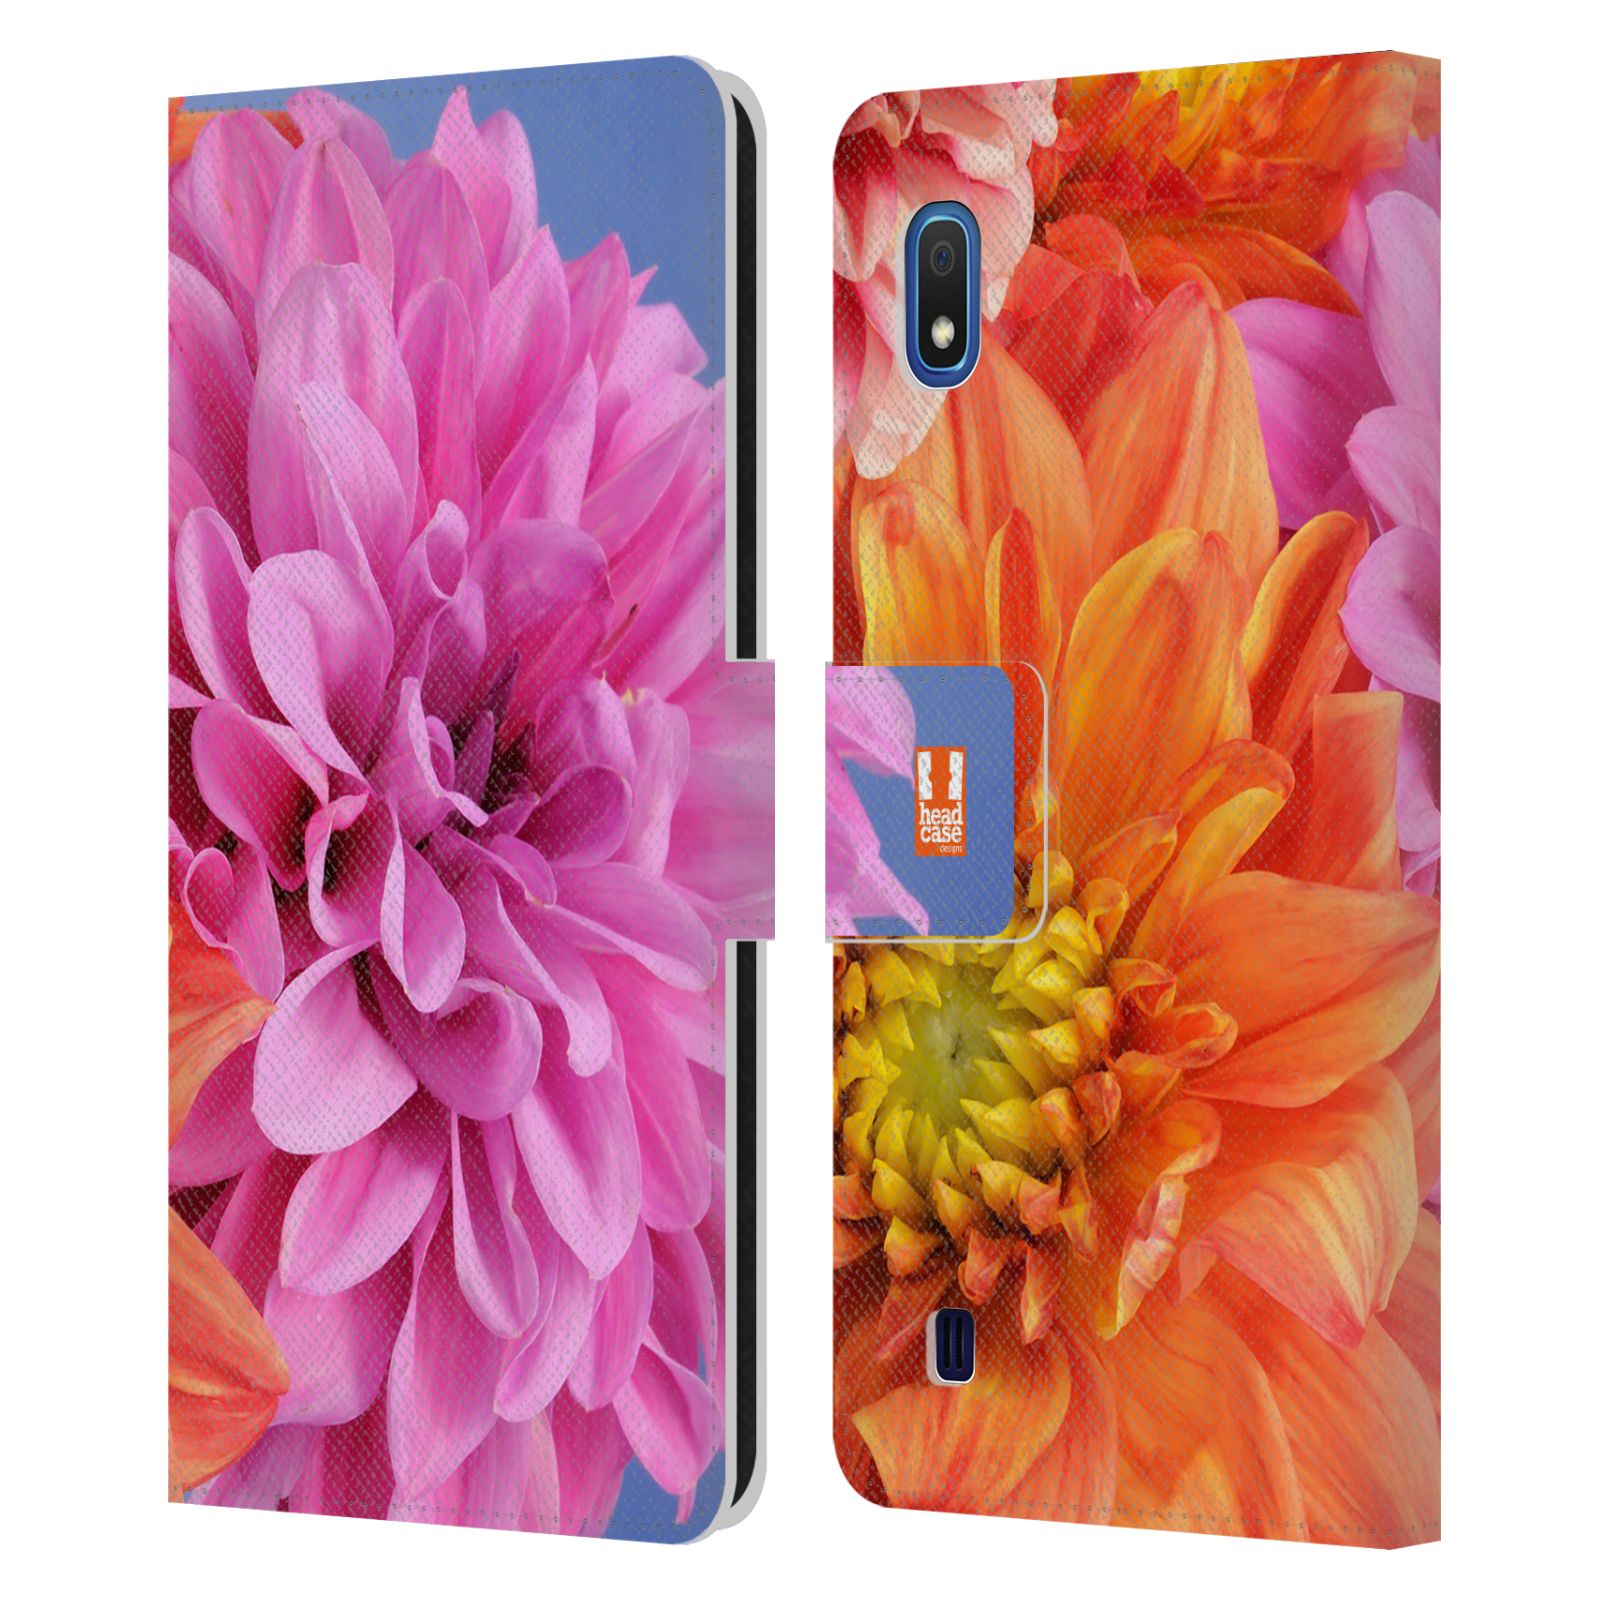 Pouzdro na mobil Samsung Galaxy A10 květy foto Jiřinka růžová a oranžová